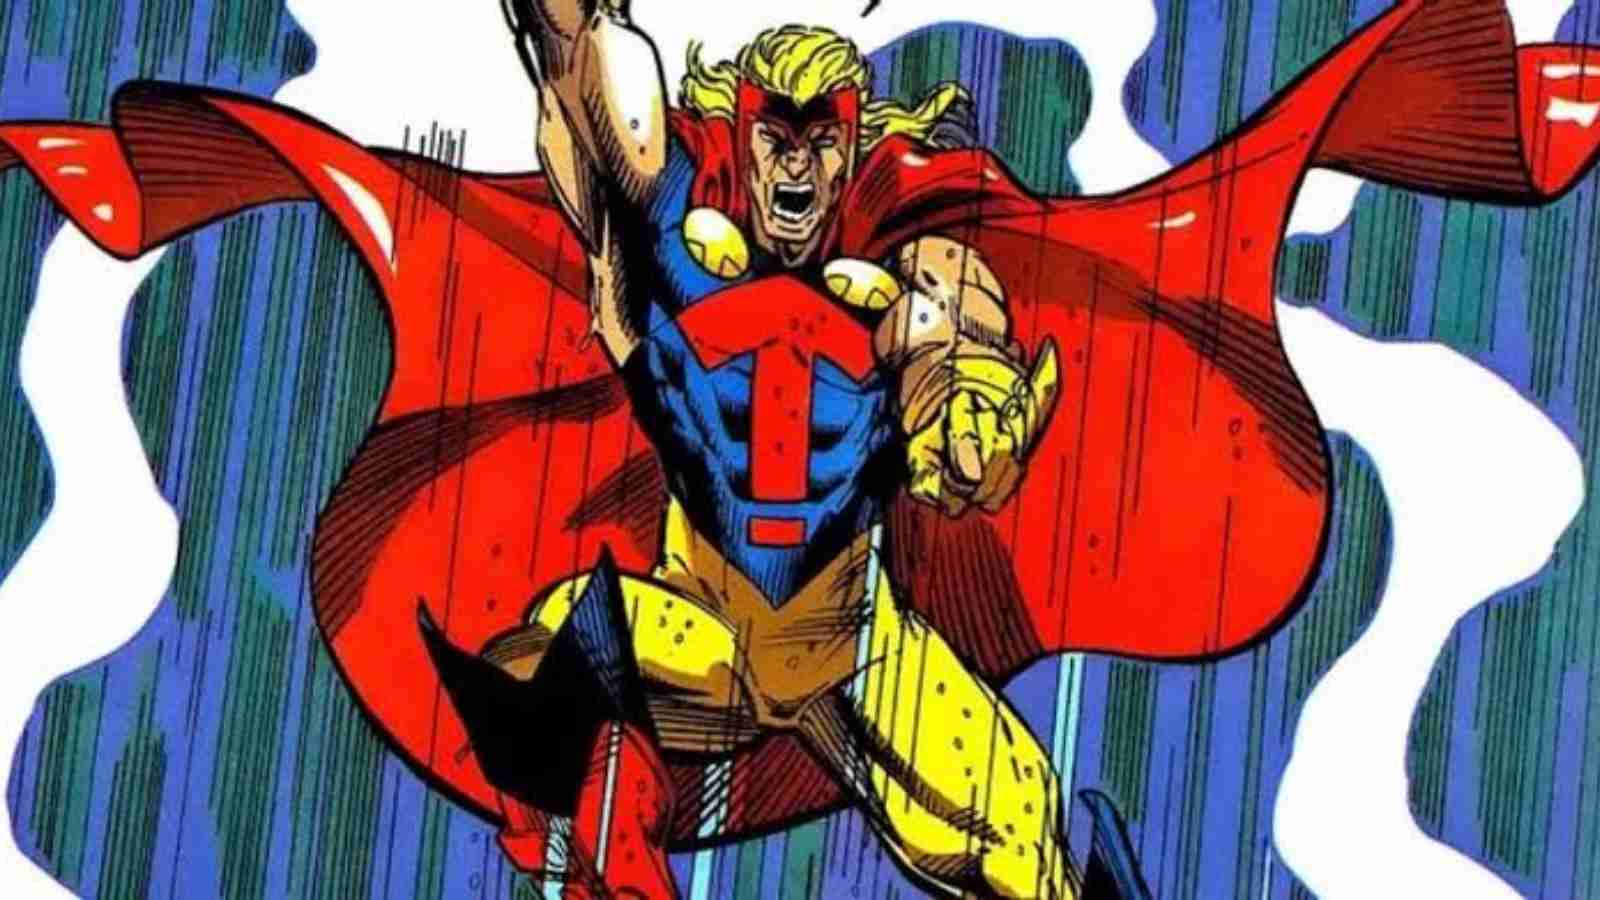 Thor El: Amalgamation of Thor and Superman